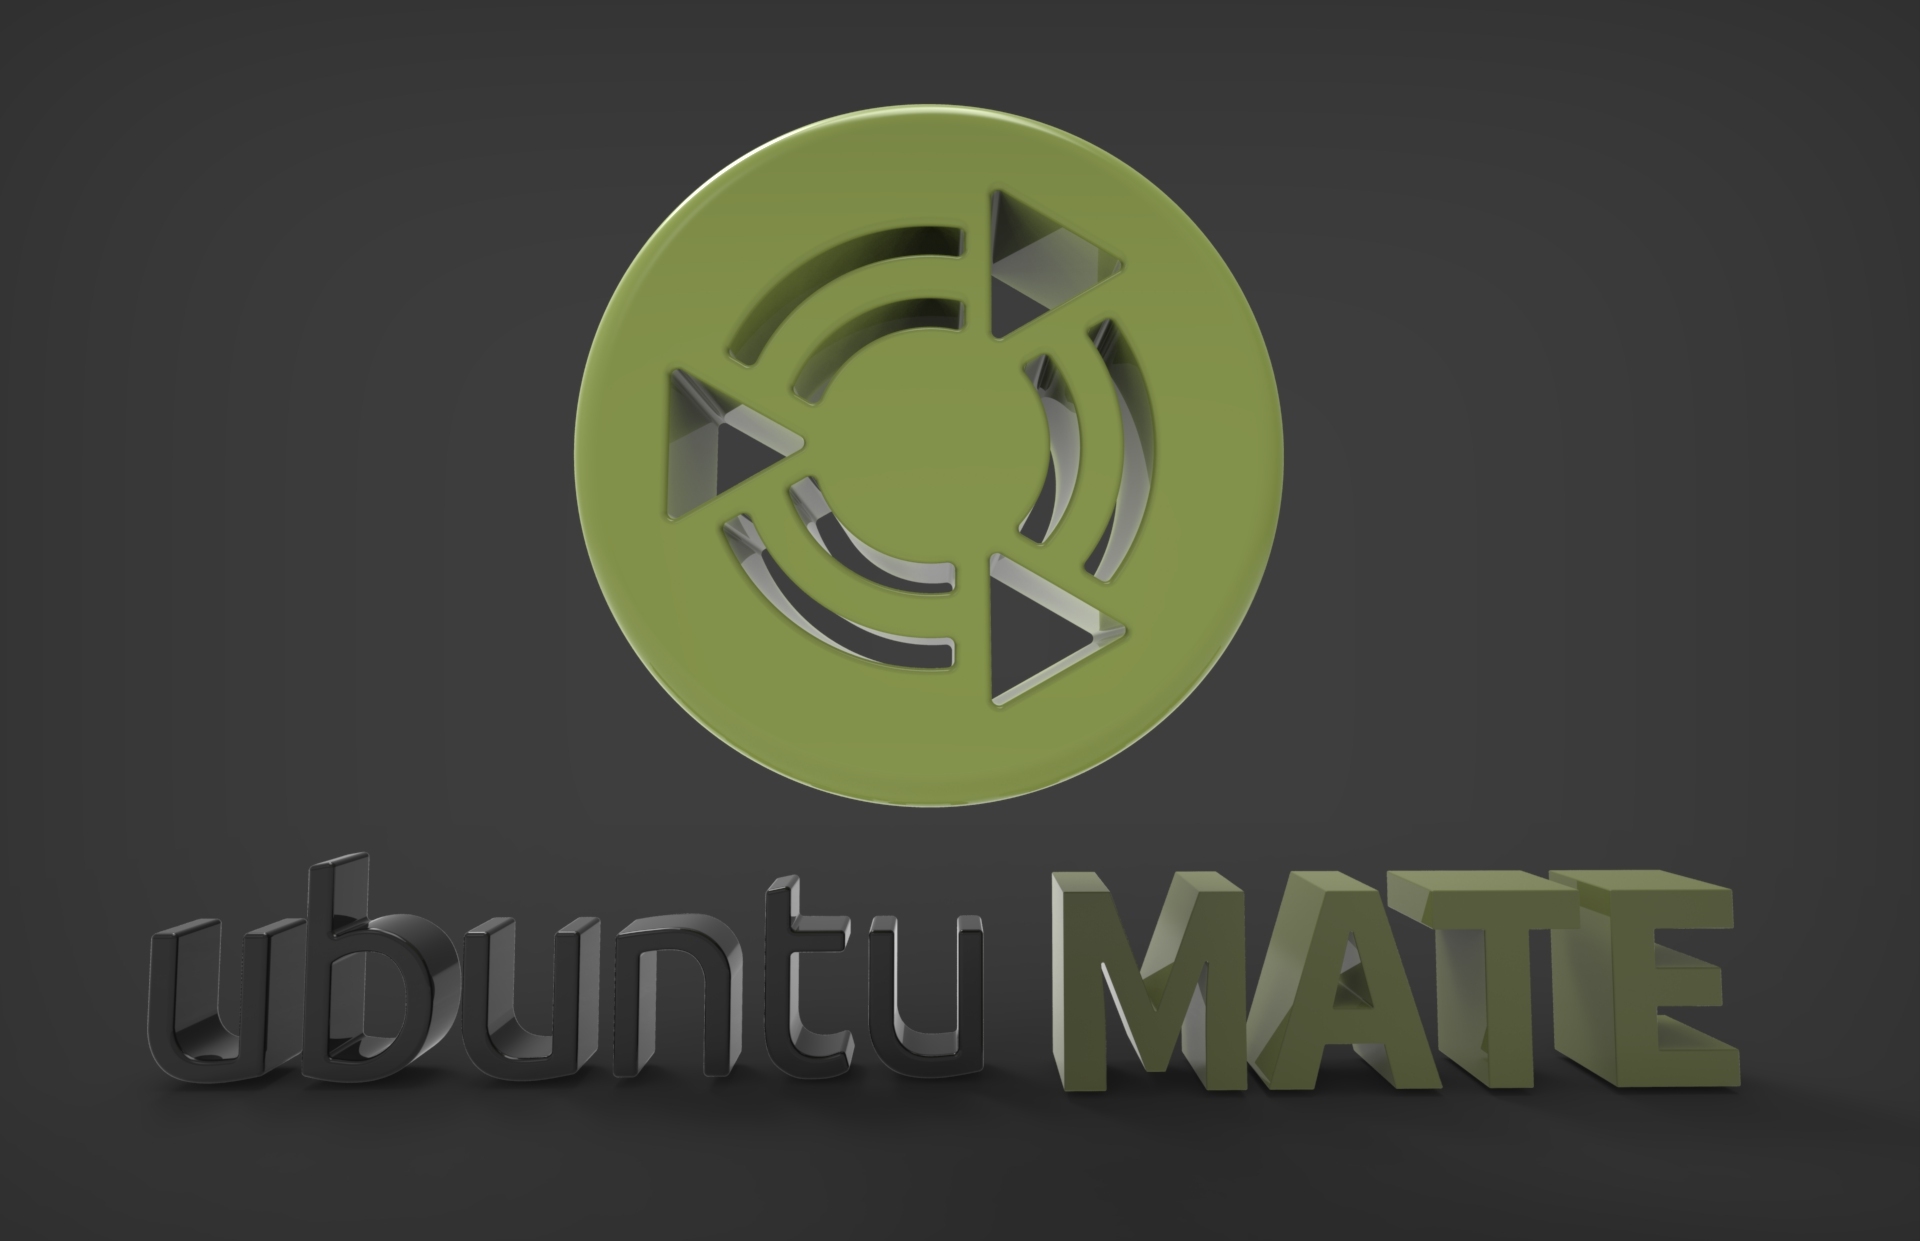 X2mate com. Ubuntu Mate. Ubuntu Mate Wallpapers. Ubuntu Mate обои Минимализм. Y2mate.